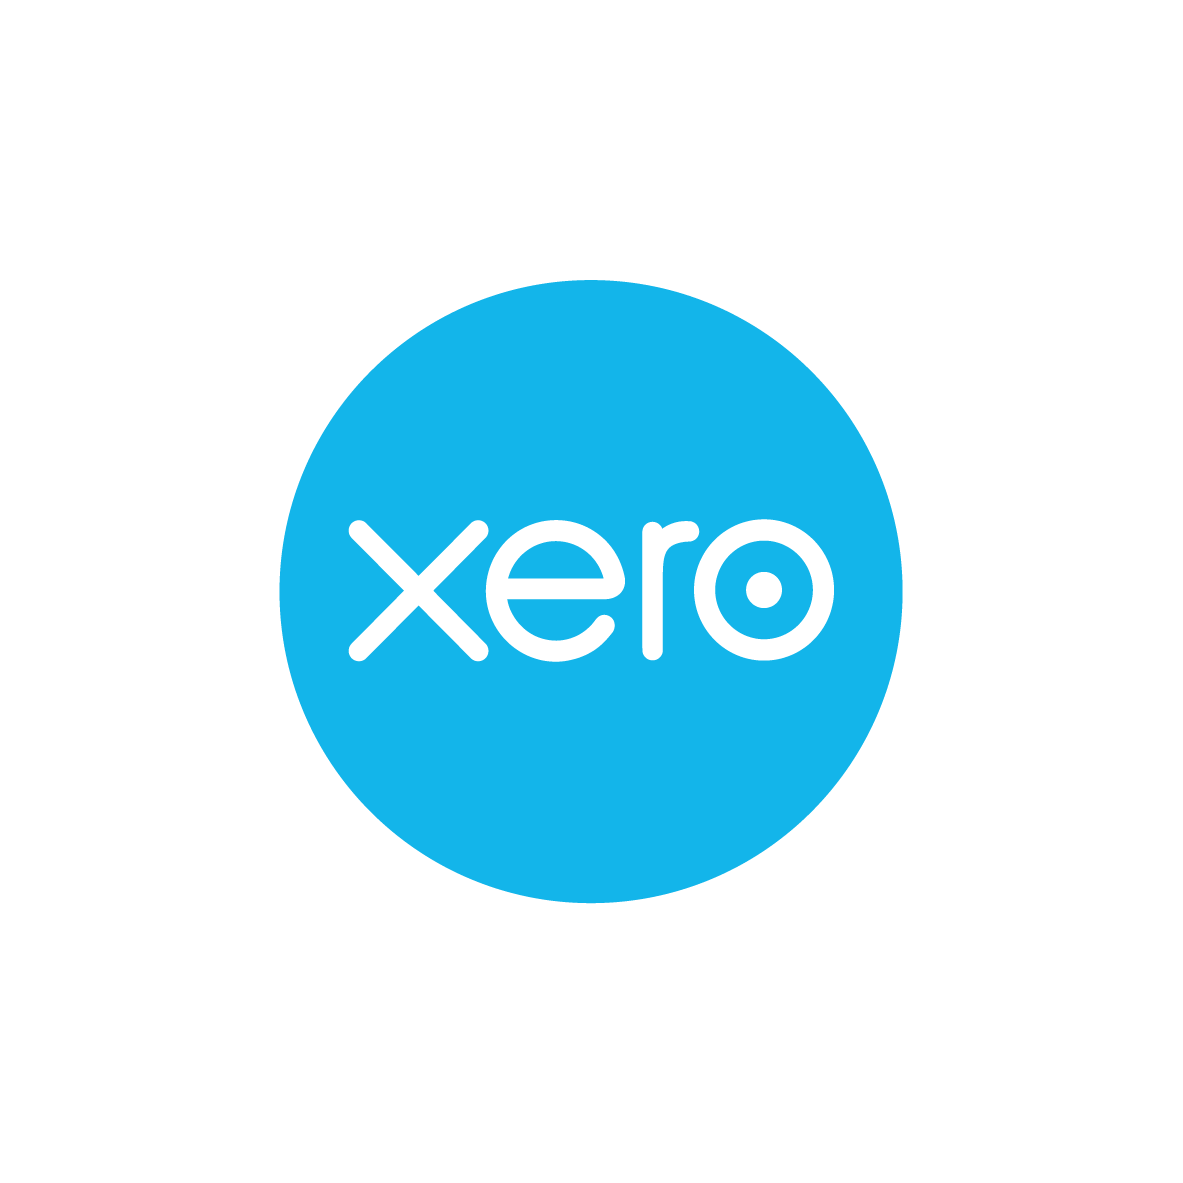 Xero Remote Training - 1 hour slots